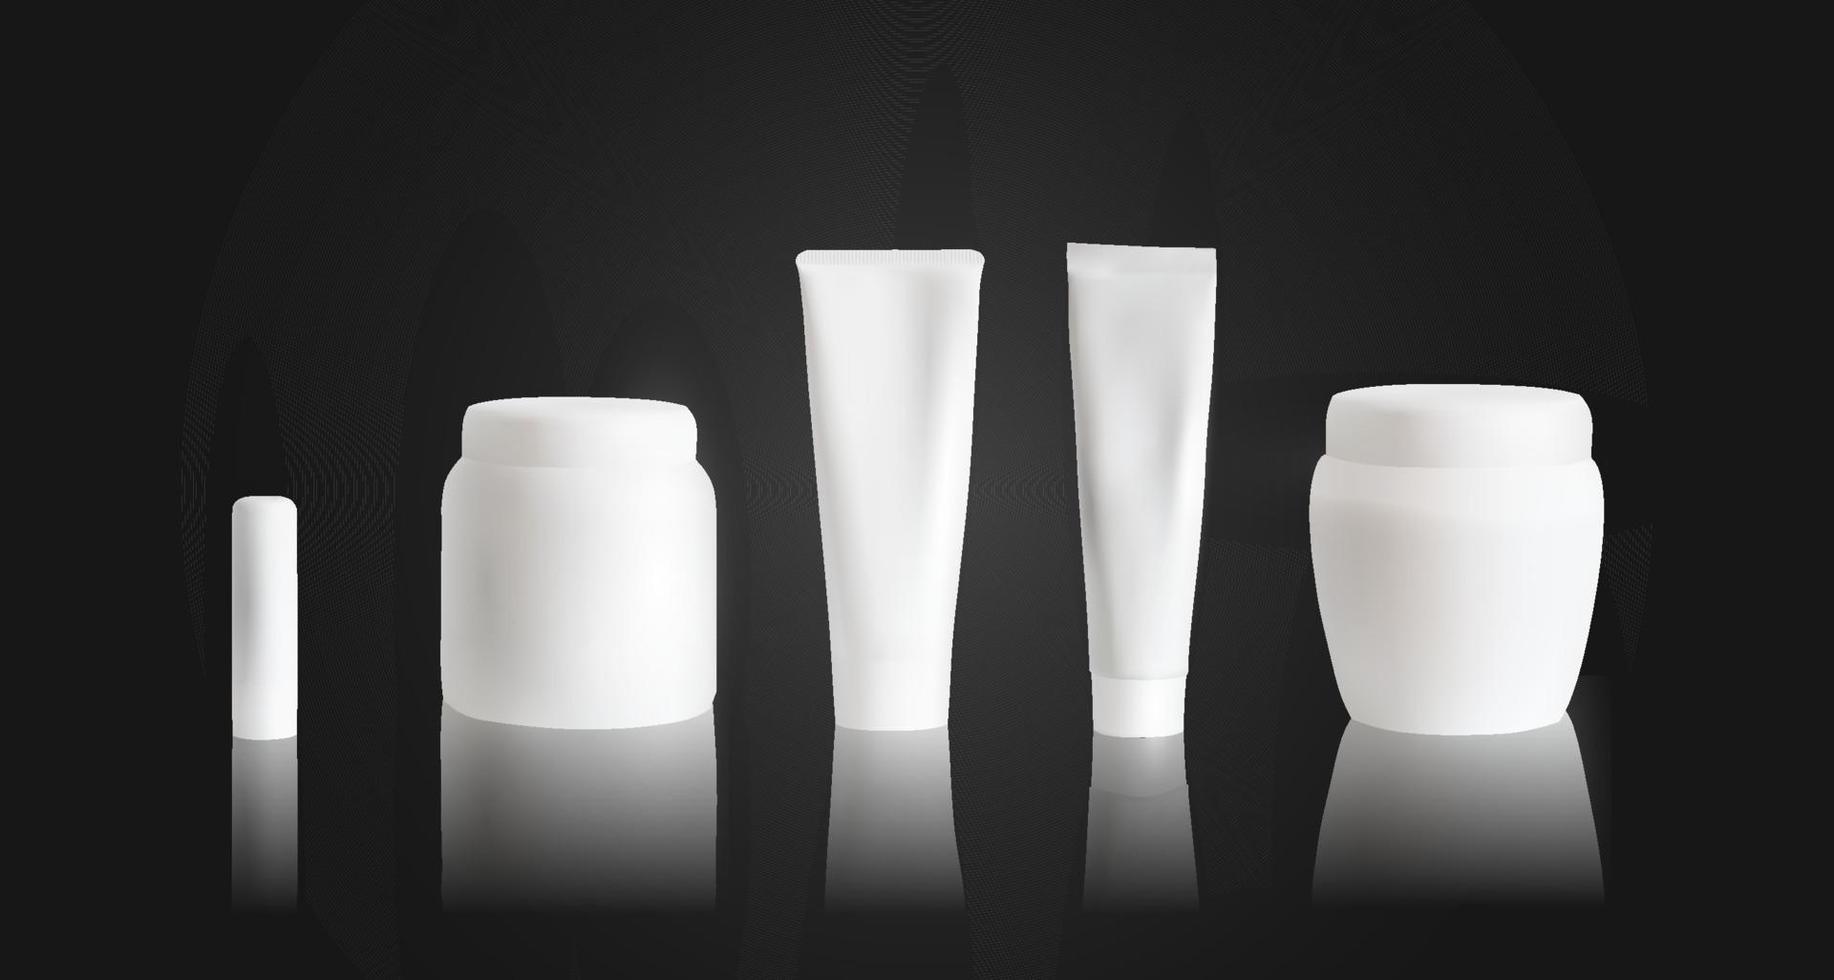 maquette de tube de crème avec pot blanc et rouge à lèvres sur fond noir. maquette d'emballage de cosmétiques. illustration vectorielle. vecteur